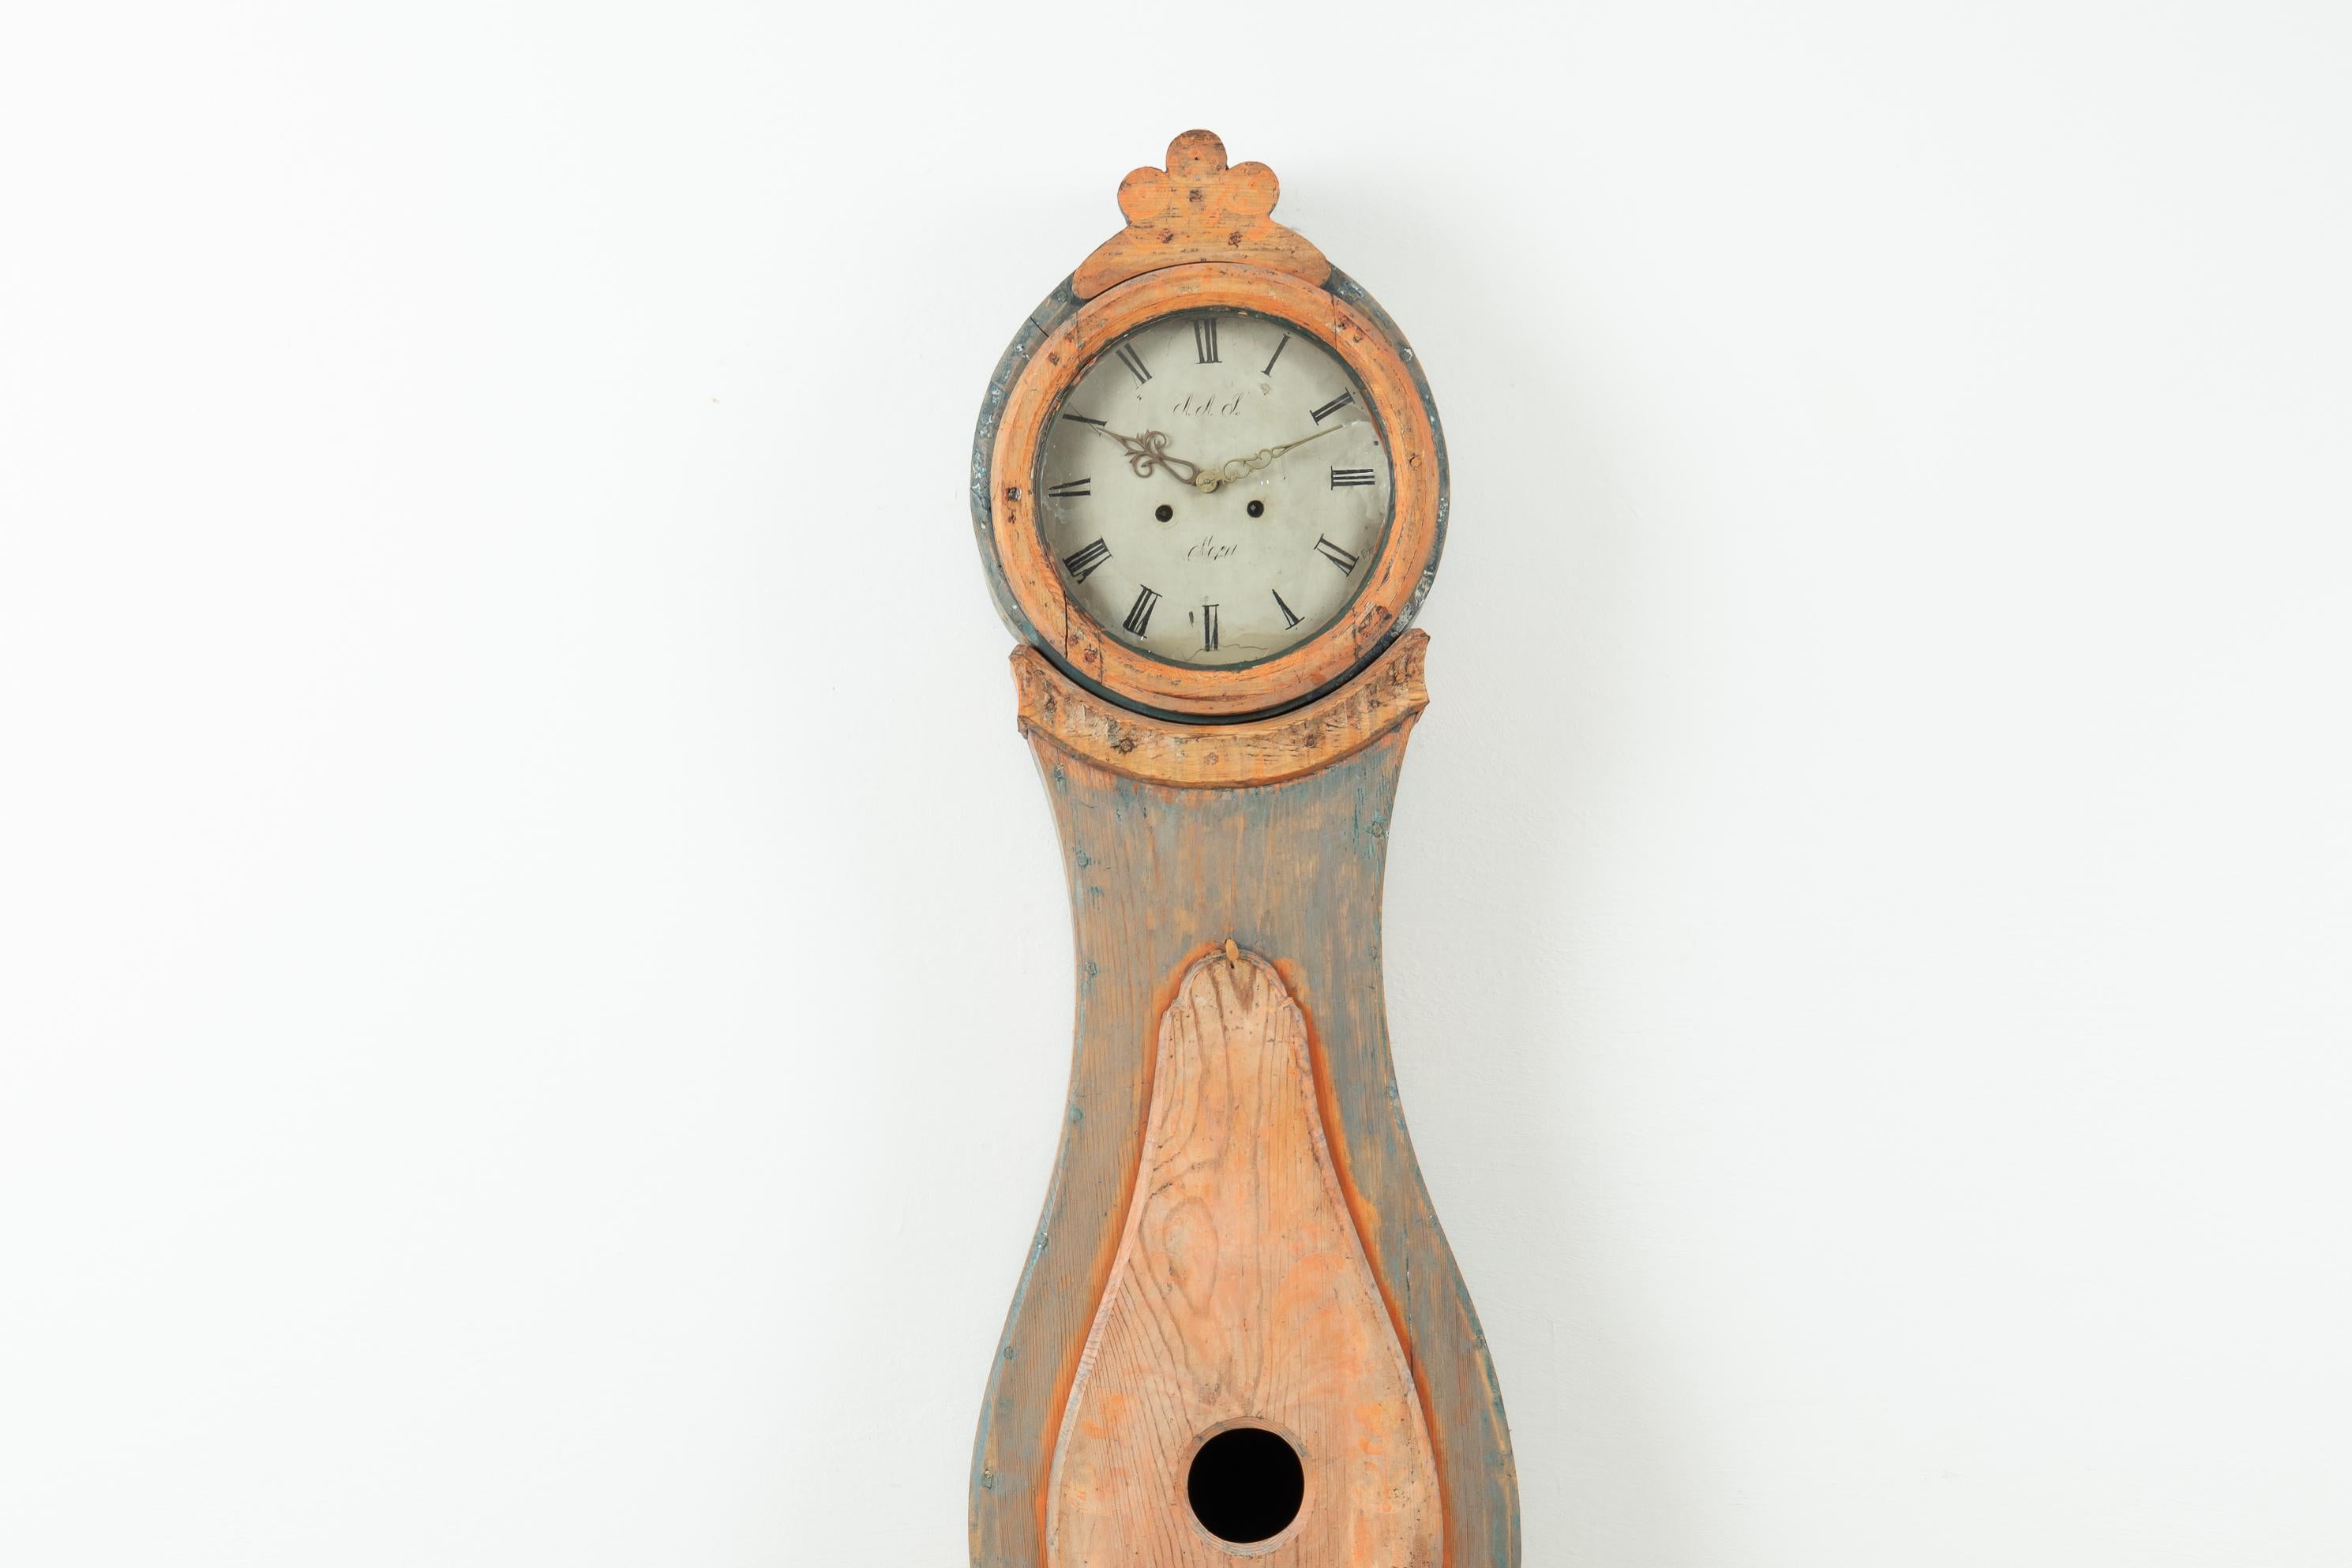 Langer Fall Uhr Form Nusnäs. Dieser Uhrentyp wird oft als Nusnäs-Uhr bezeichnet, nach der Gemeinde Nusnäs in der schwedischen Provinz Dalarna, wo sie hergestellt wurden. Die Uhren zeichnen sich durch ihre glatte Front und ihre vom Rokoko